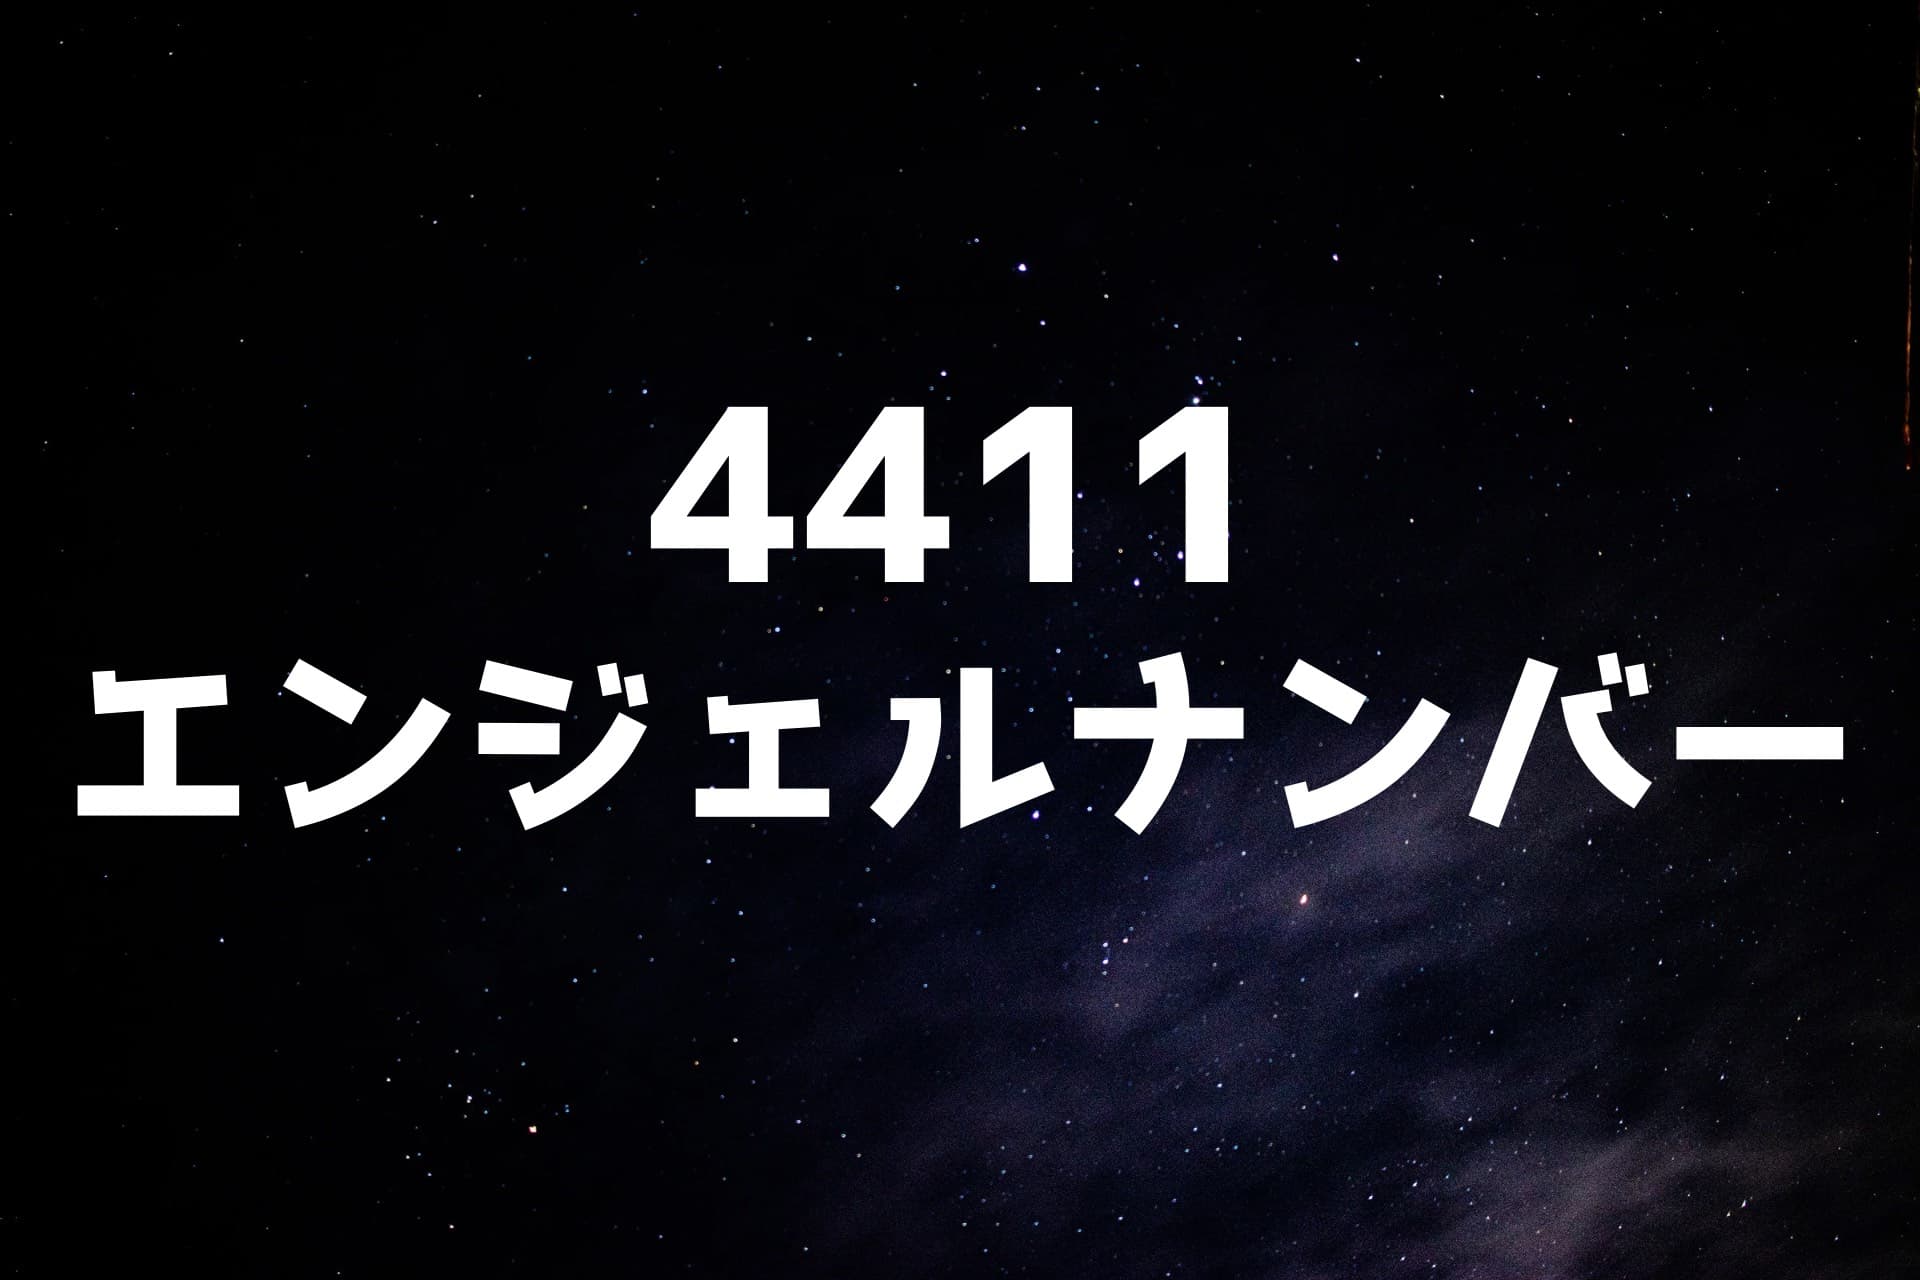 宇宙の背景に4411エンジェルナンバーの文字が書かれた画像